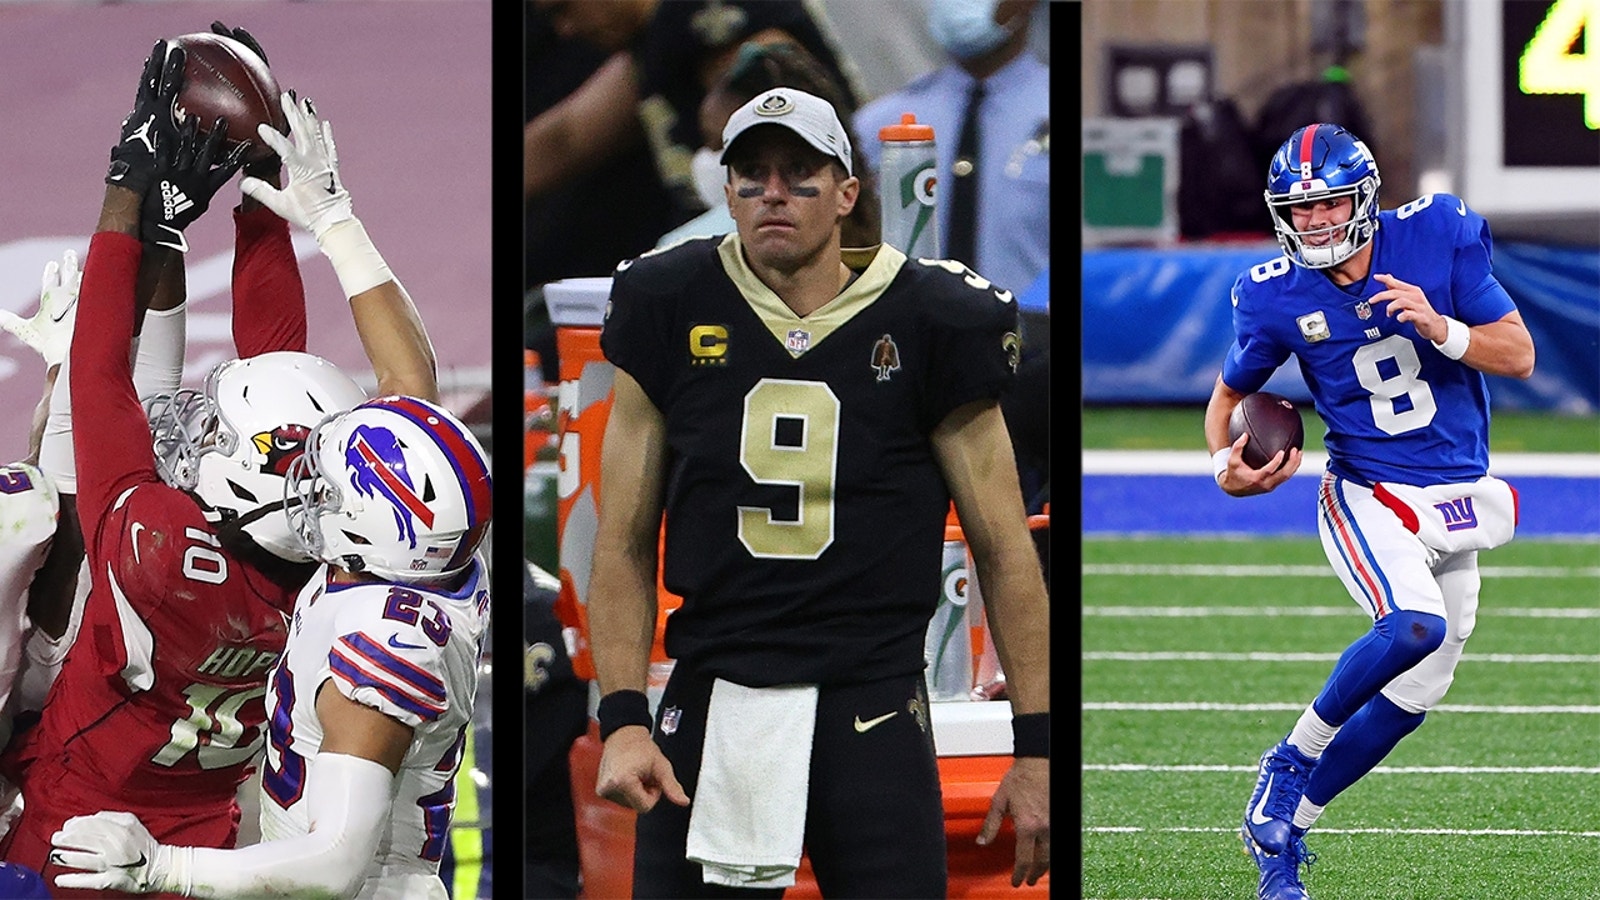 NFL Week 10 recap: Kyler Murray magic, Brees injury, Giants heating up, & more | FOX NFL